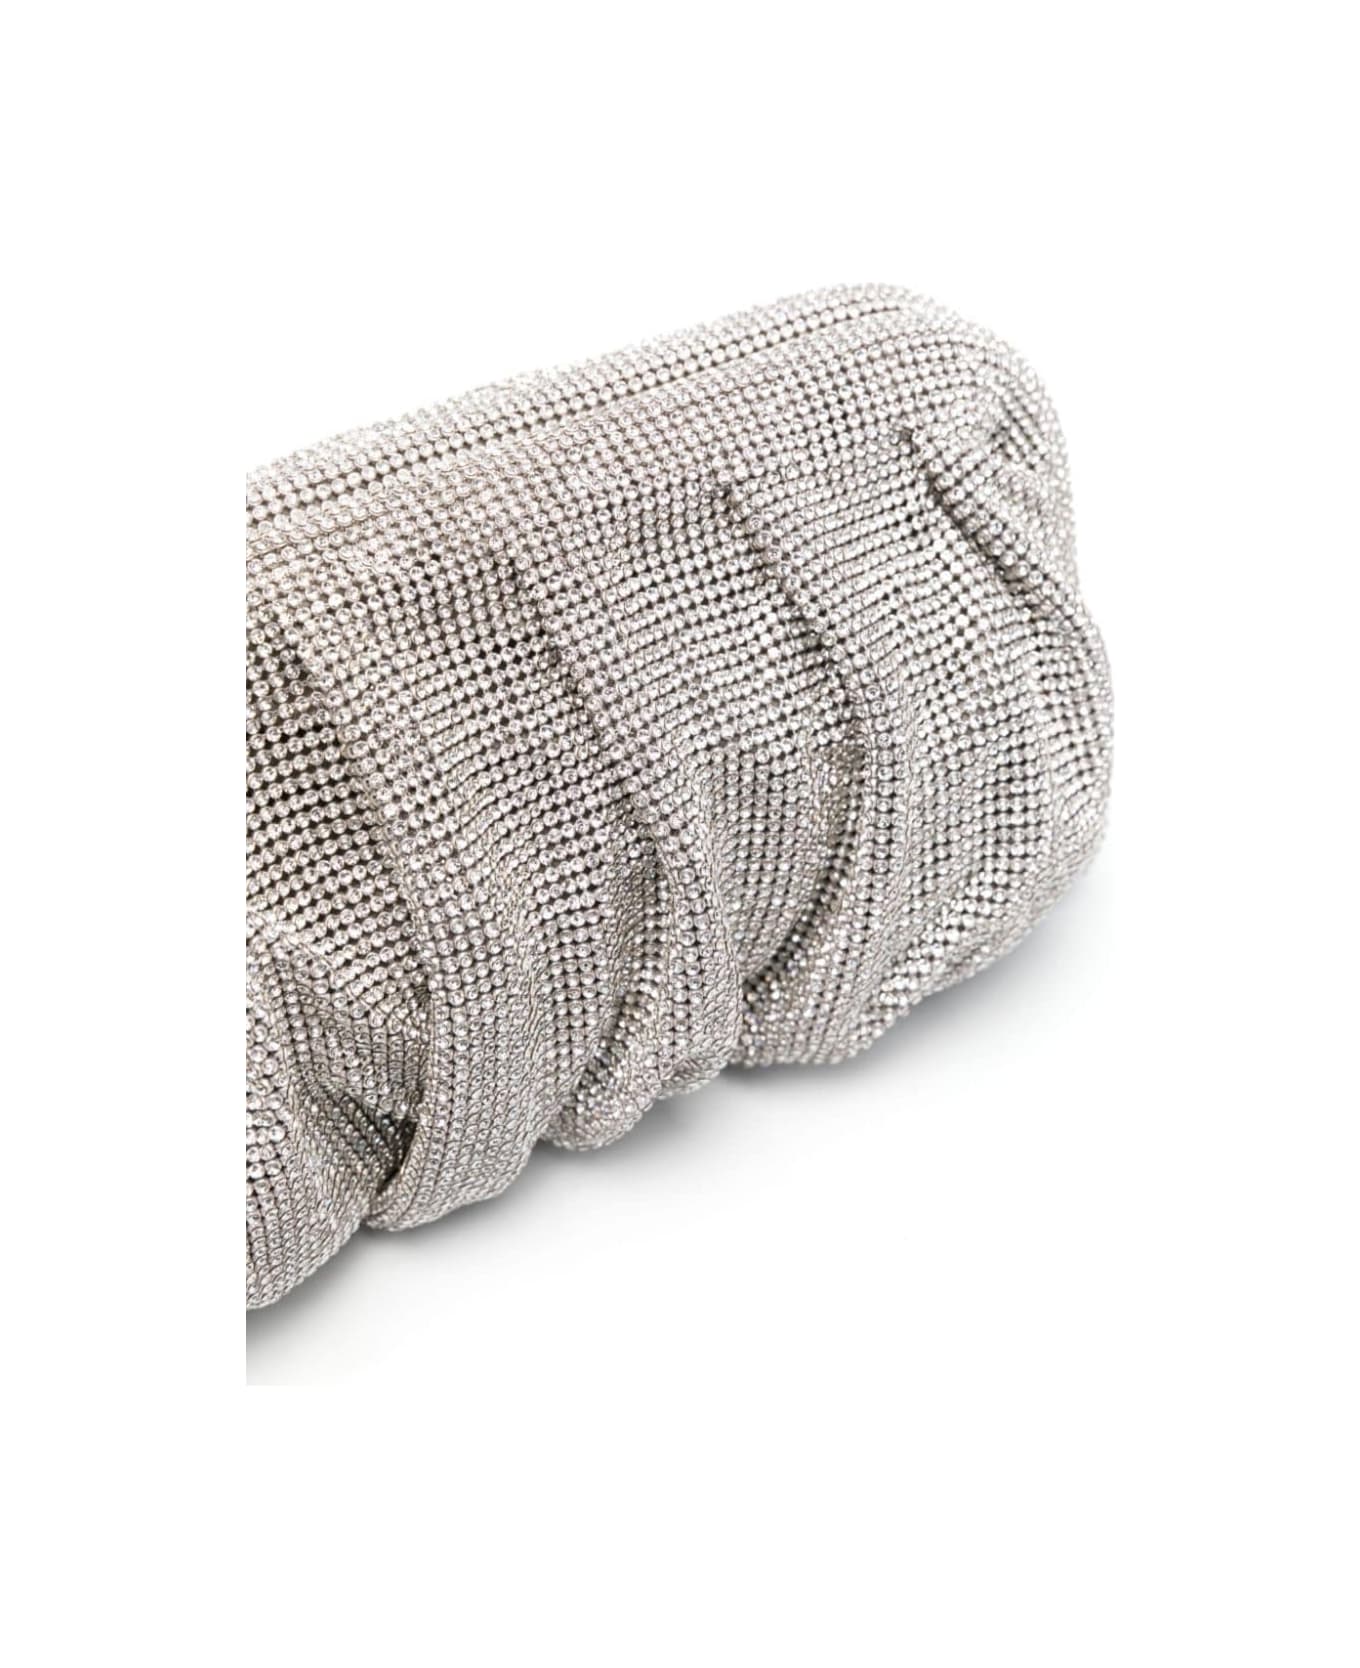 Benedetta Bruzziches 'venus La Grande' Silver Clutch Bag In Fabric With Allover Crystals Woman - Metallic クラッチバッグ